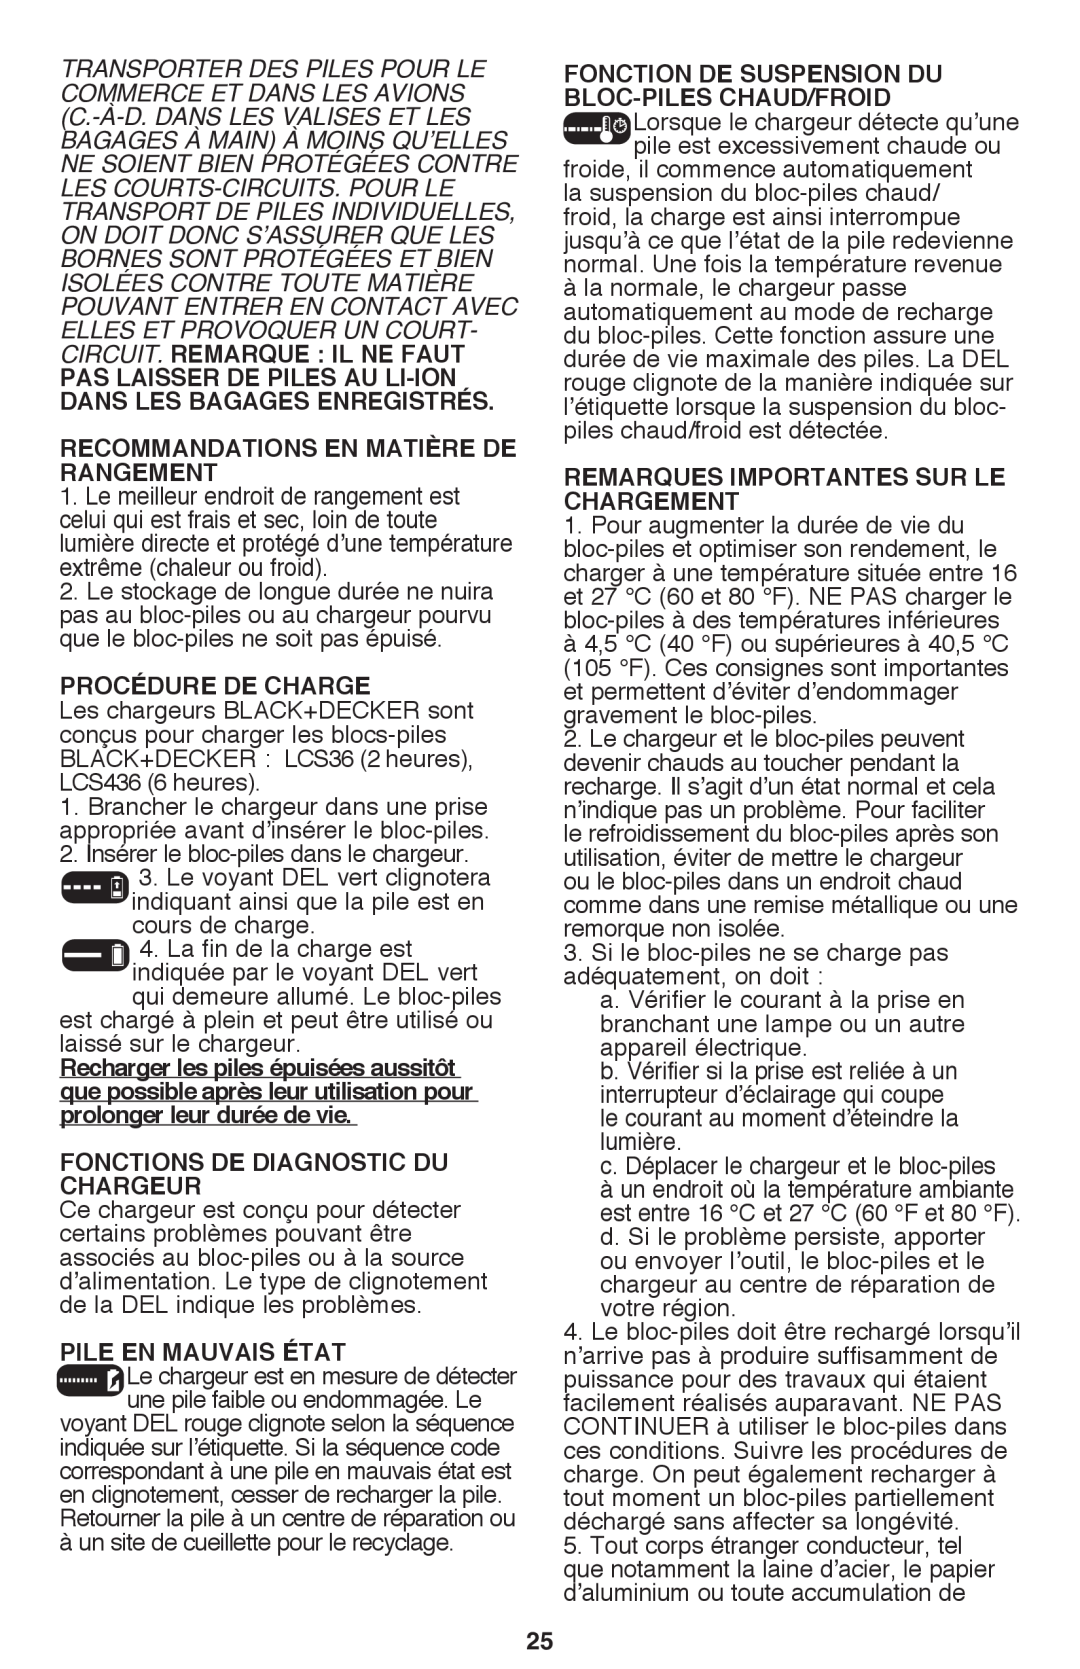 Black & Decker CM2040 Recommandations en matière de rangement, Procédure de charge, Fonctions de diagnostic du chargeur 